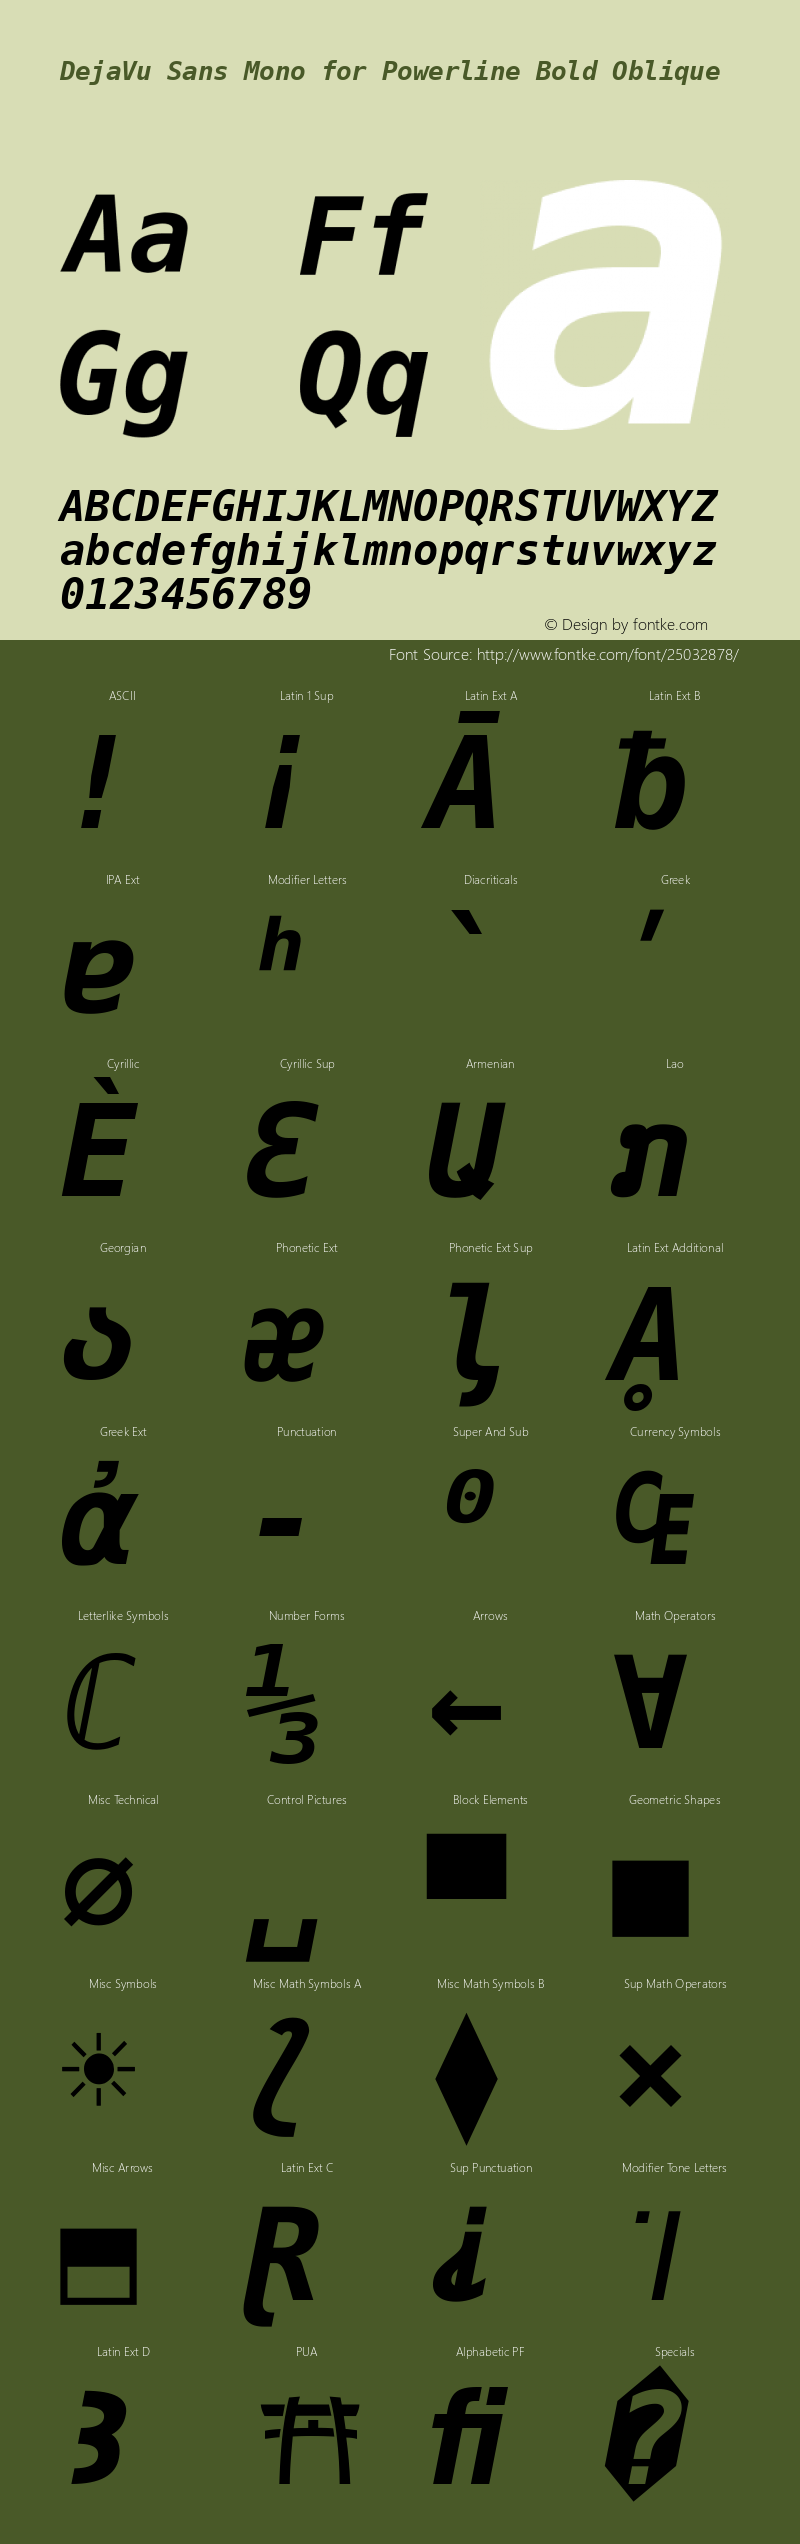 DejaVu Sans Mono Bold Oblique for Powerline Nerd Font Plus Font Awesome Plus Octicons Plus Pomicons Version 2.33图片样张